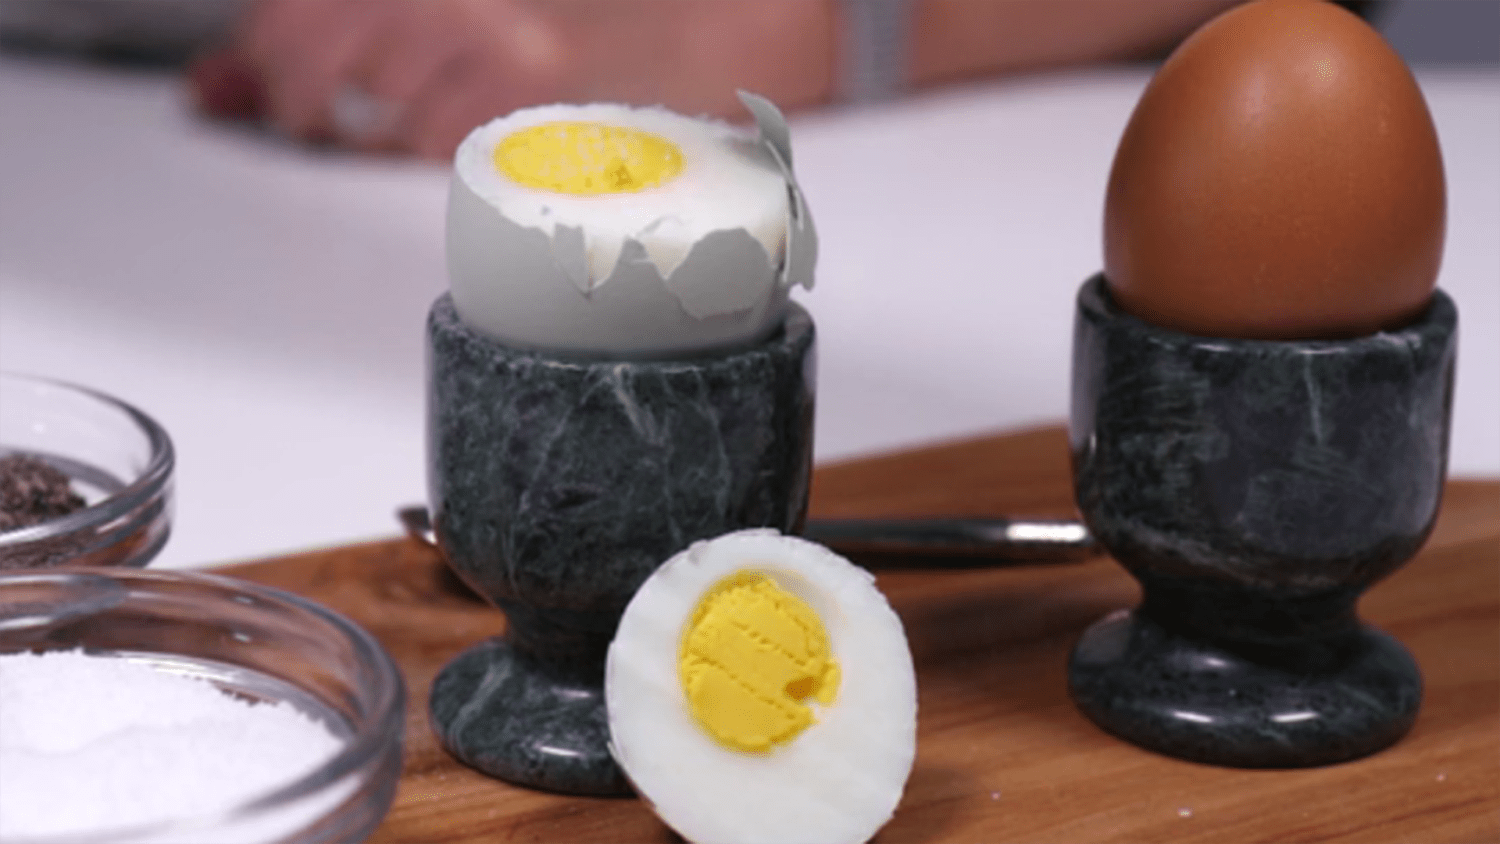 How to Boil Eggs: Hard-Boiled Egg Recipe